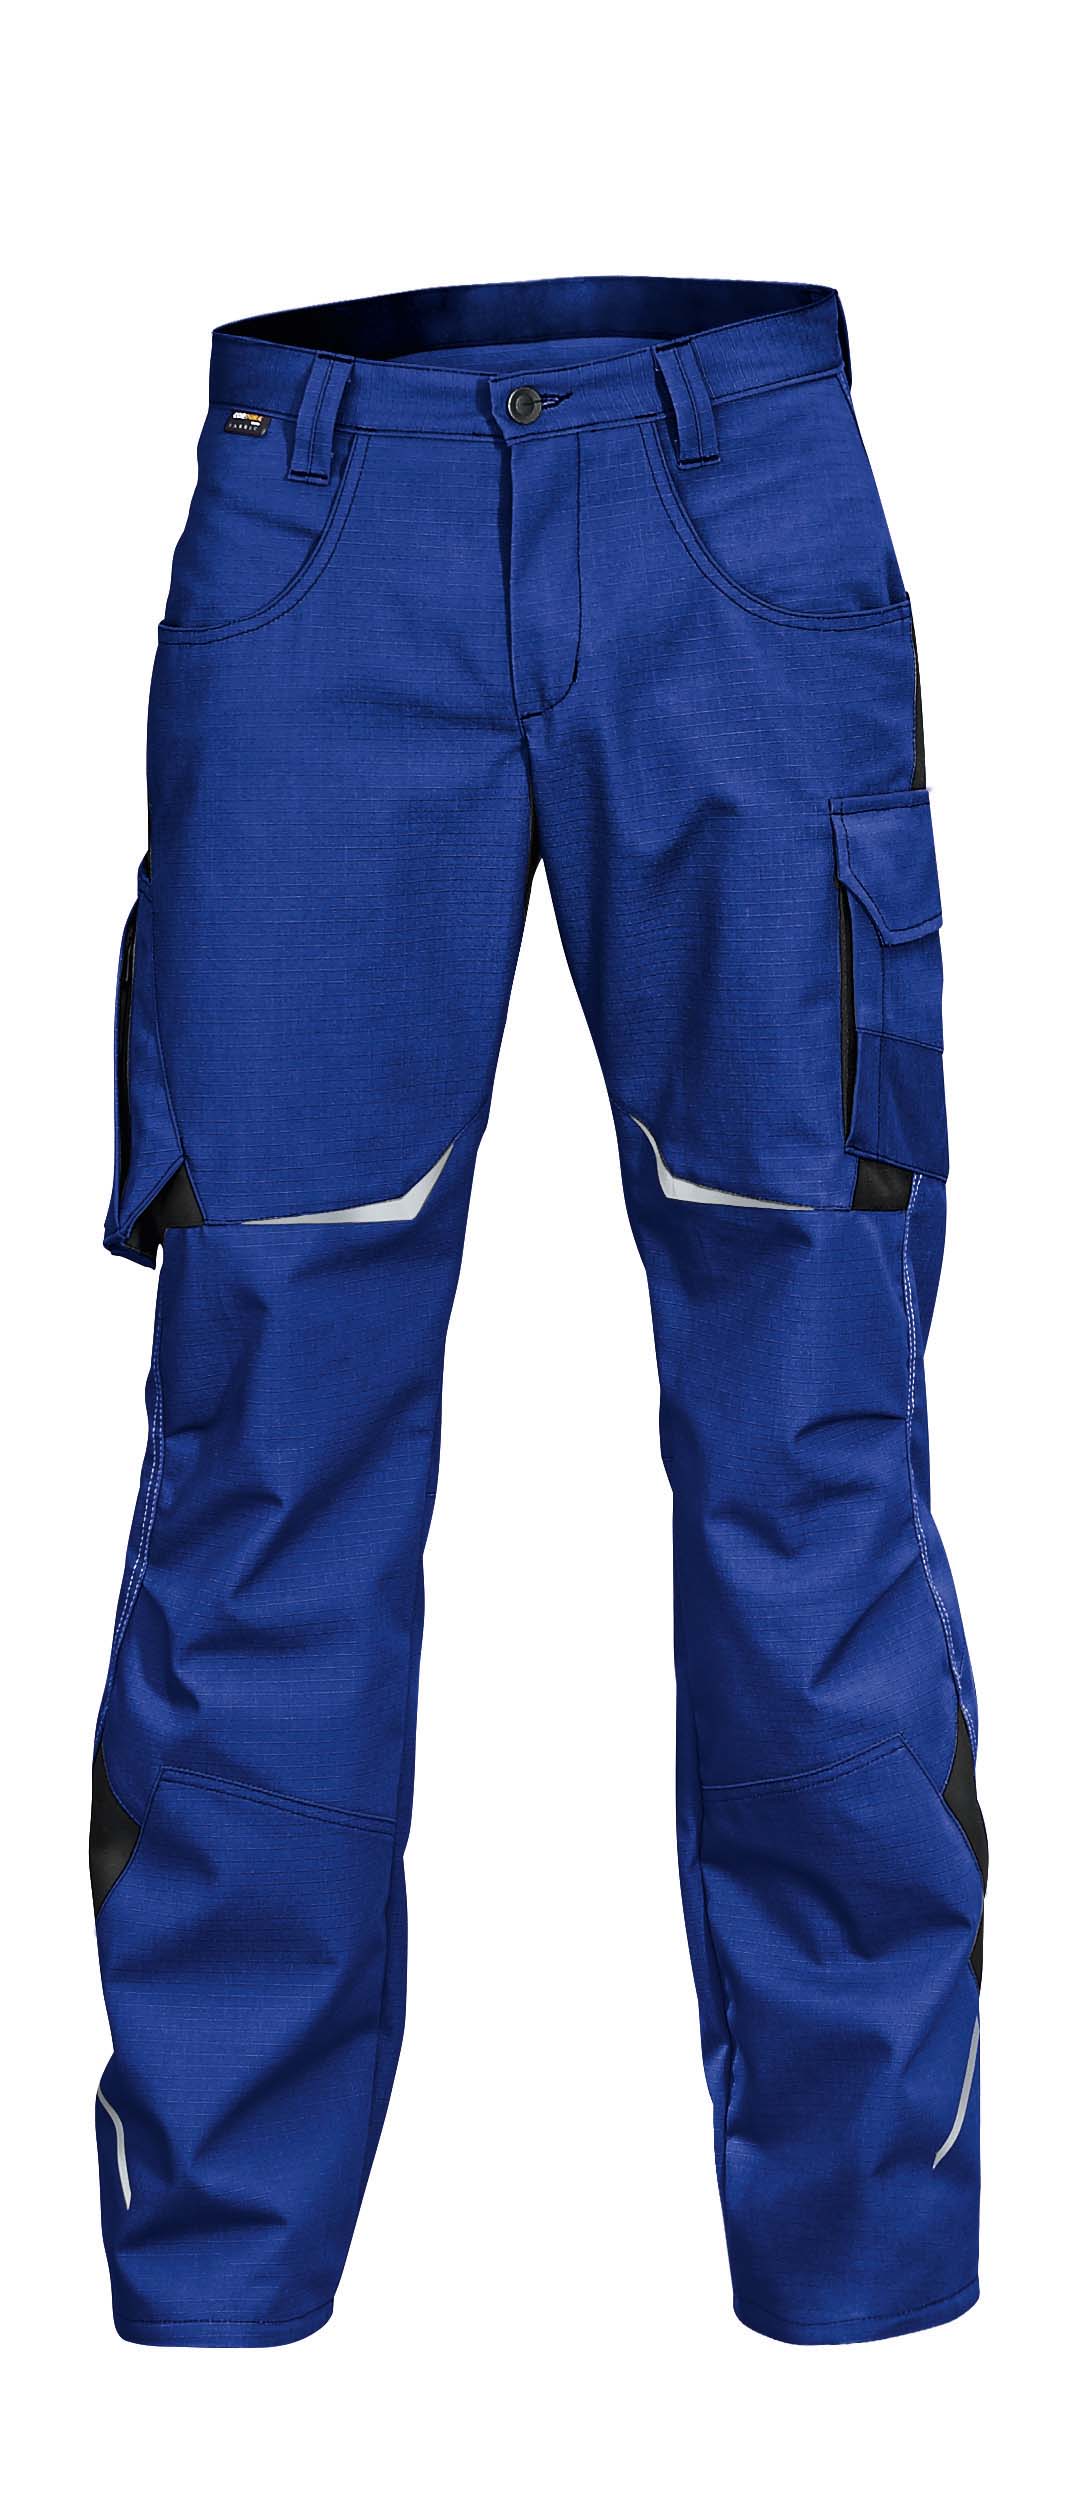 Kübler Pulsschlag Reiter schwarz / Arbeitsschutz - Arbeitshose Hose blau